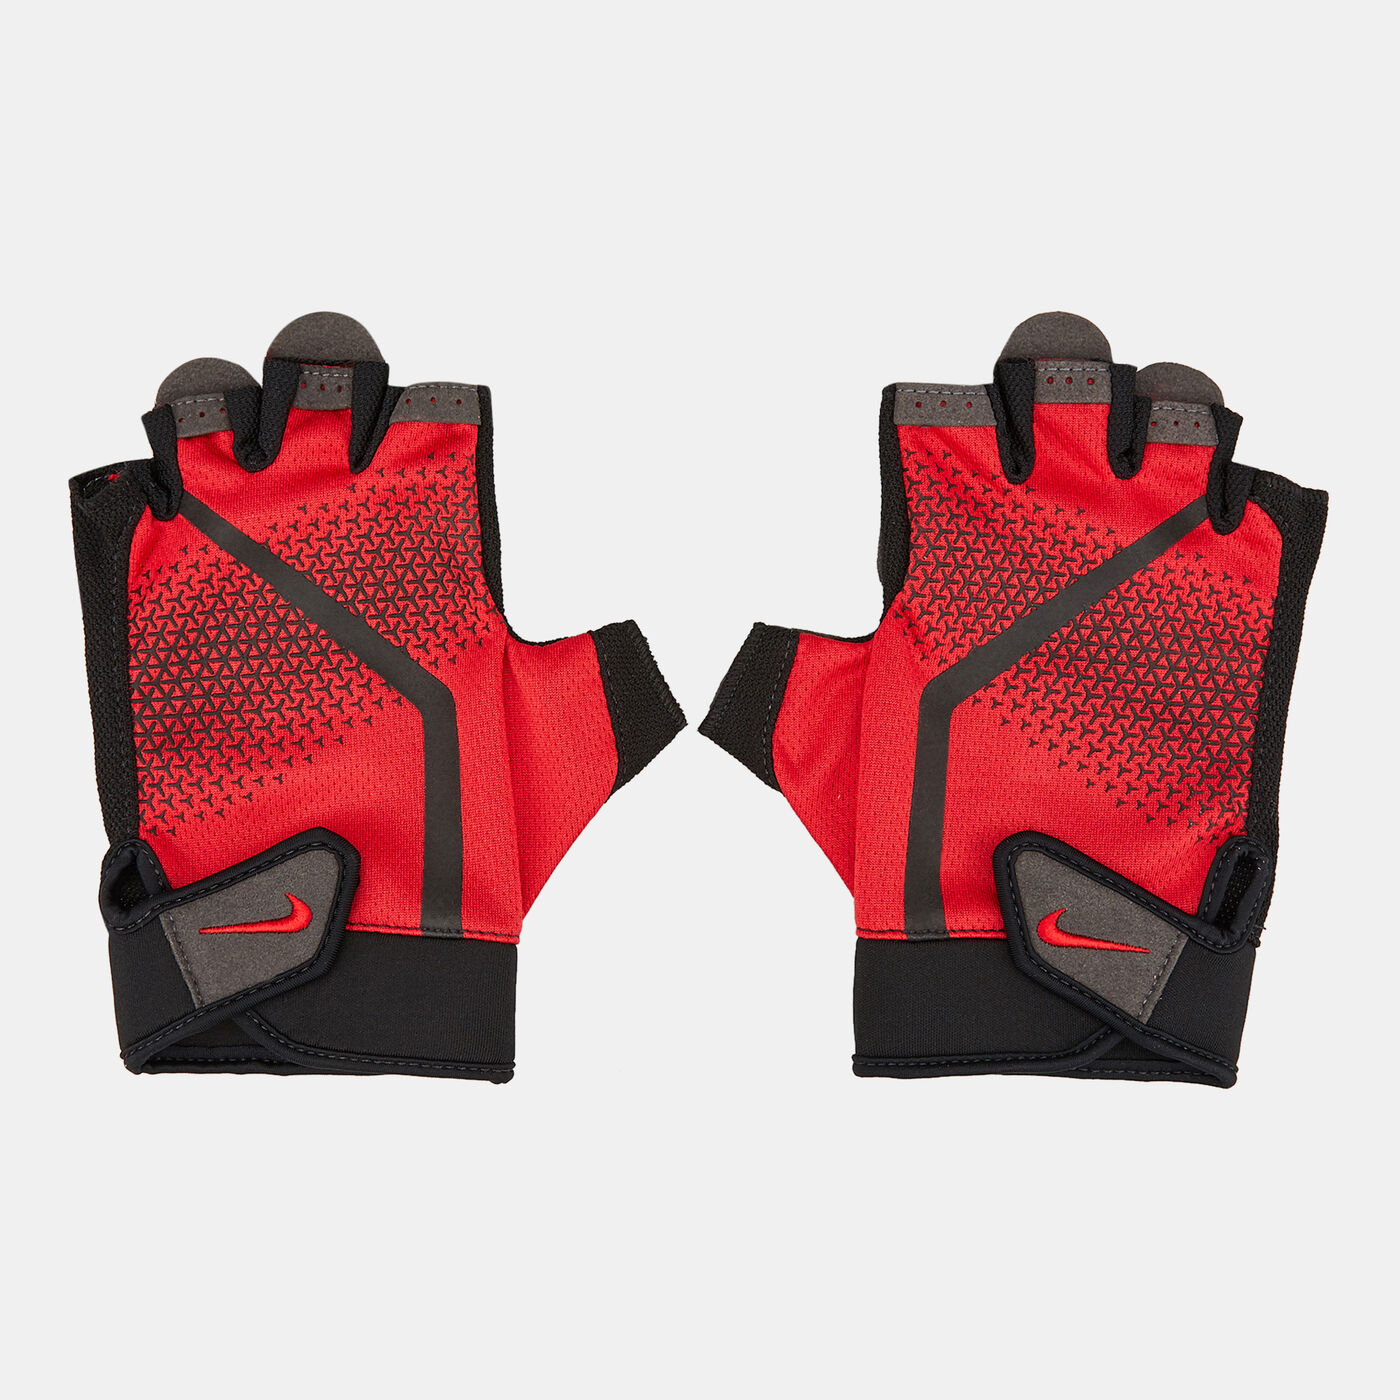 Men's Extreme Fitness Gloves